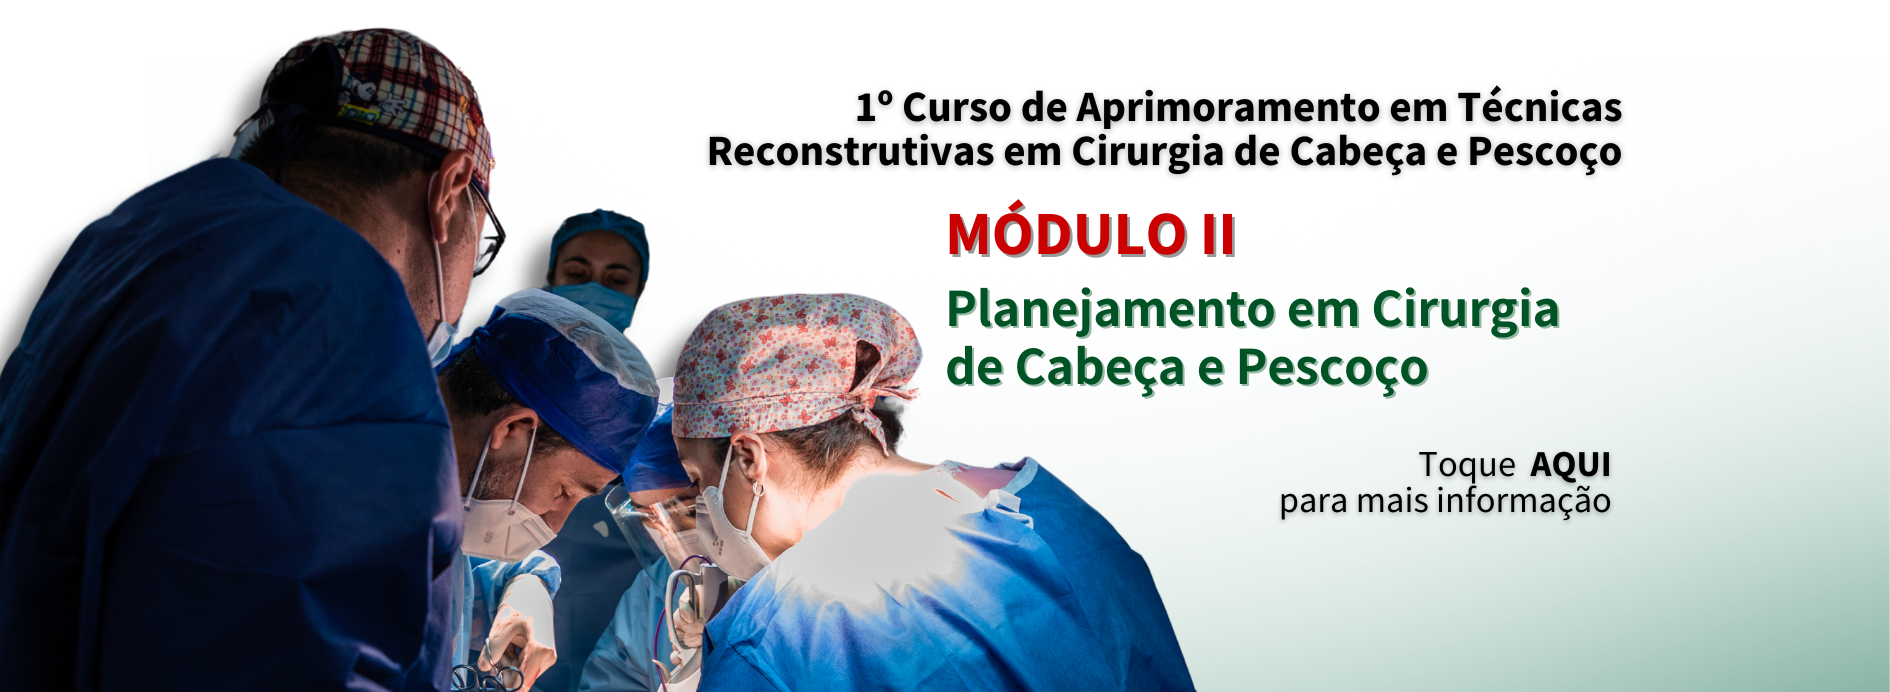 MÓDULO II – 1º Curso de Aprimoramento em Técnicas Reconstrutivas em Cirurgia de Cabeça e Pescoço